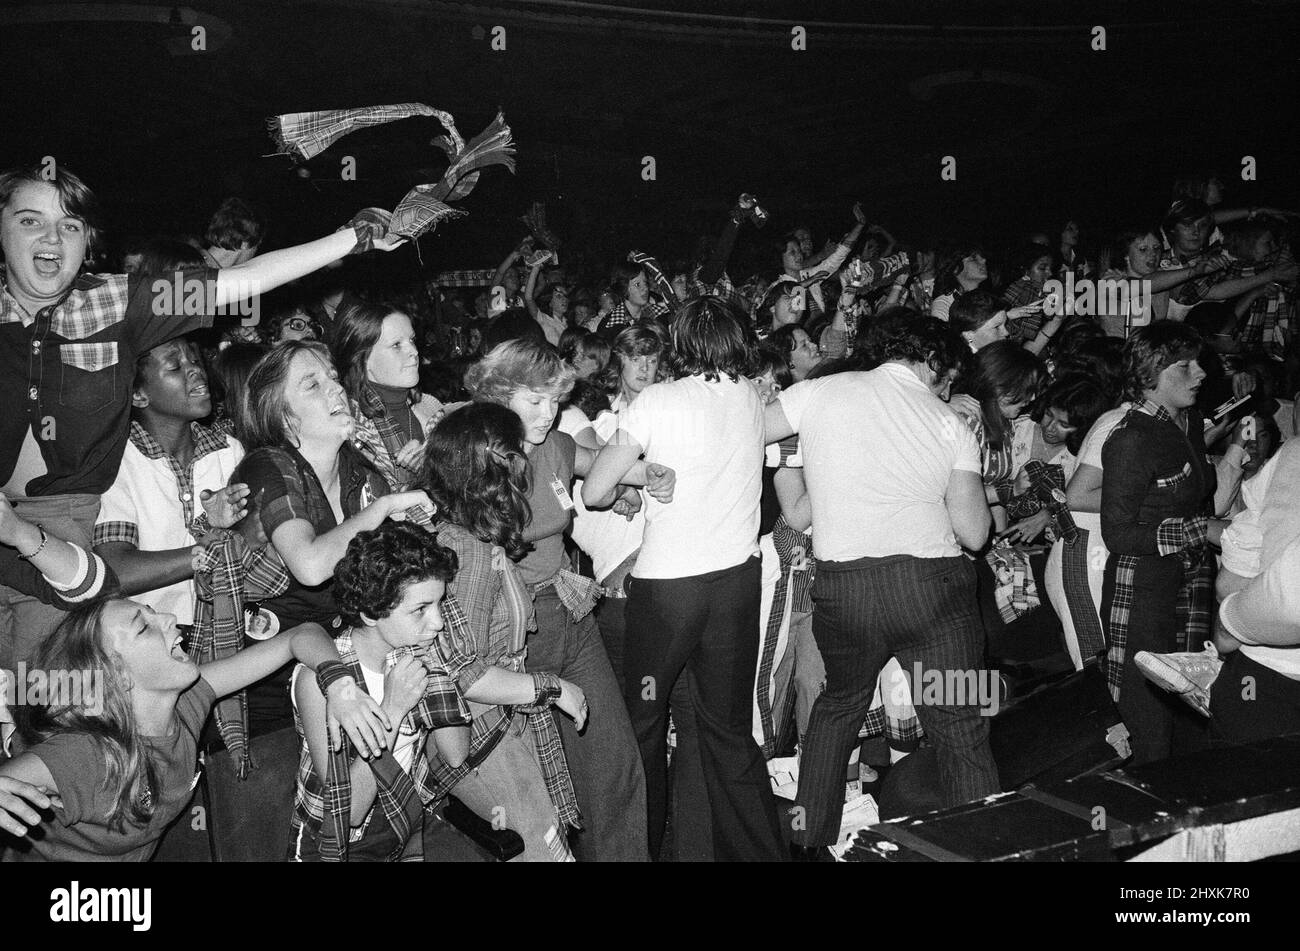 Des fans hystériques assistent à un concert Bay City Rollers à Victoria, Londres. Les adolescents criants ont causé des milliers de livres de dégâts et le spectacle a dû être arrêté deux fois quand les fans ont grimpé en avant. 19th septembre 1976. Banque D'Images